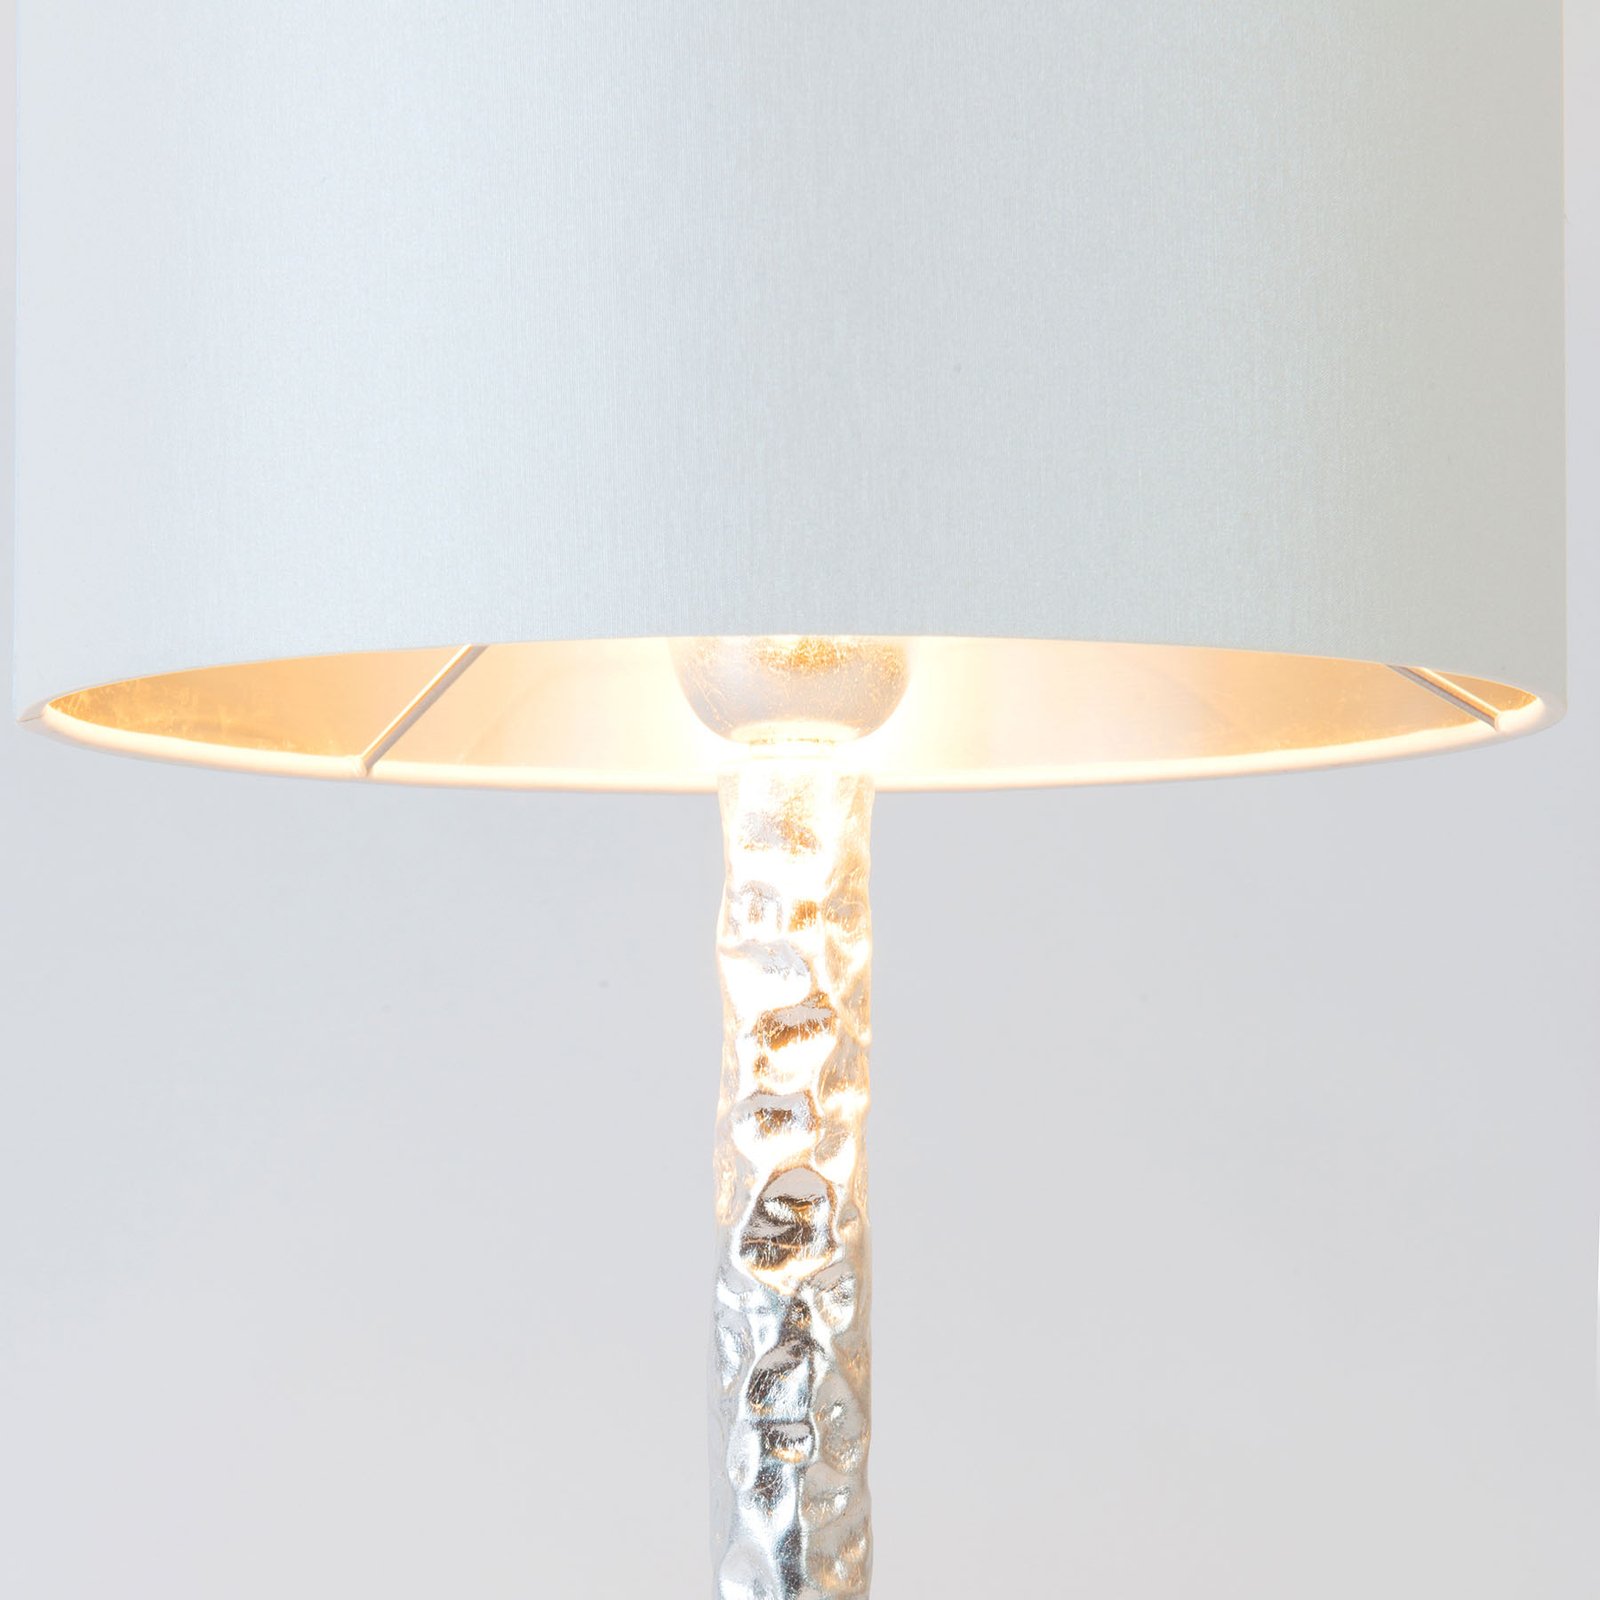 Cancelliere Rotonda table lamp white/silver 57 cm